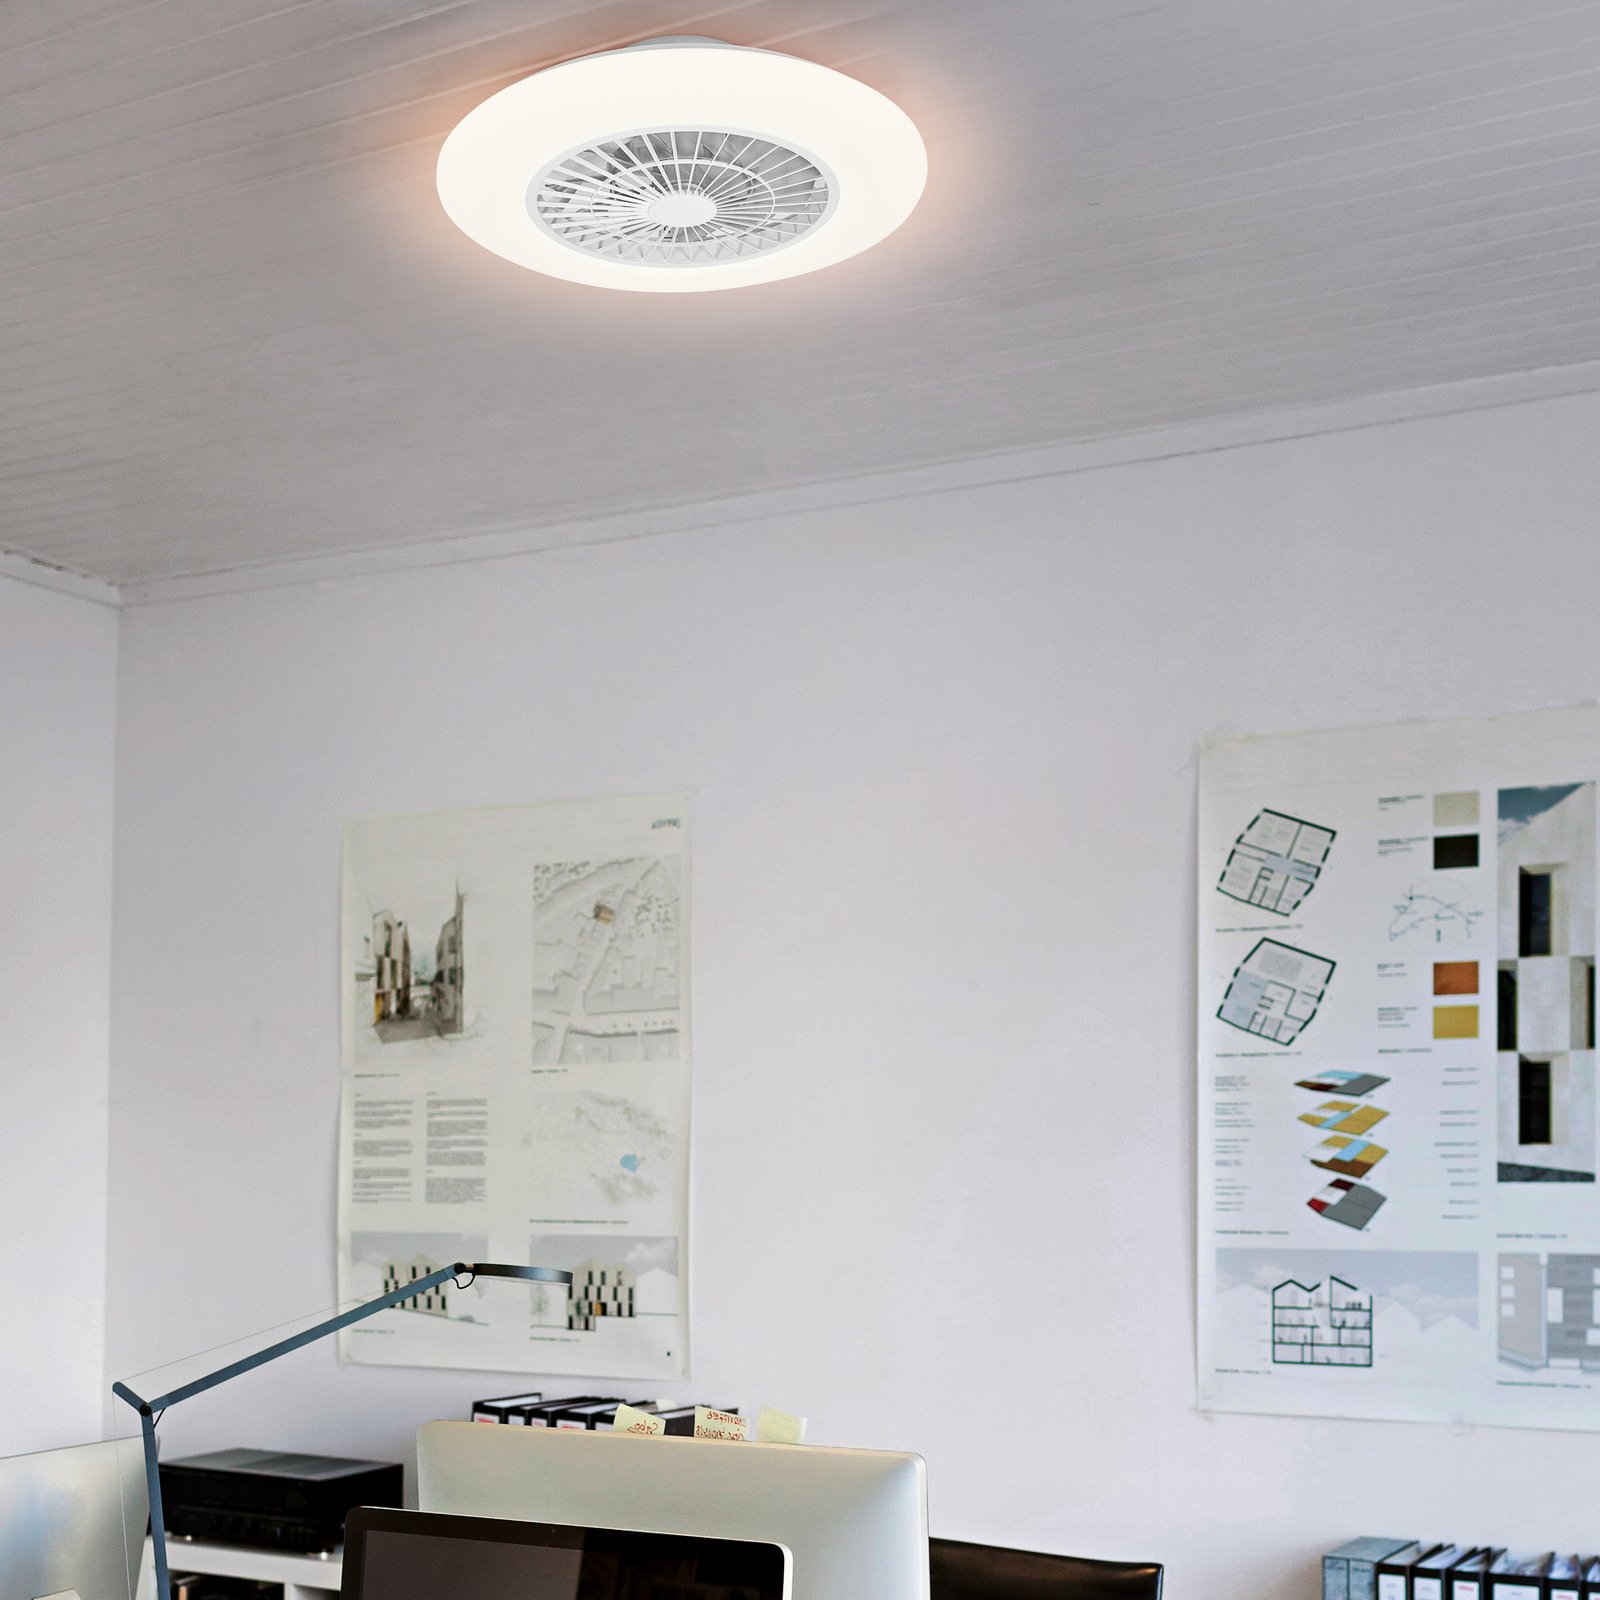 LEDVANCE SMART+ WiFi LED stropní ventilátor Round